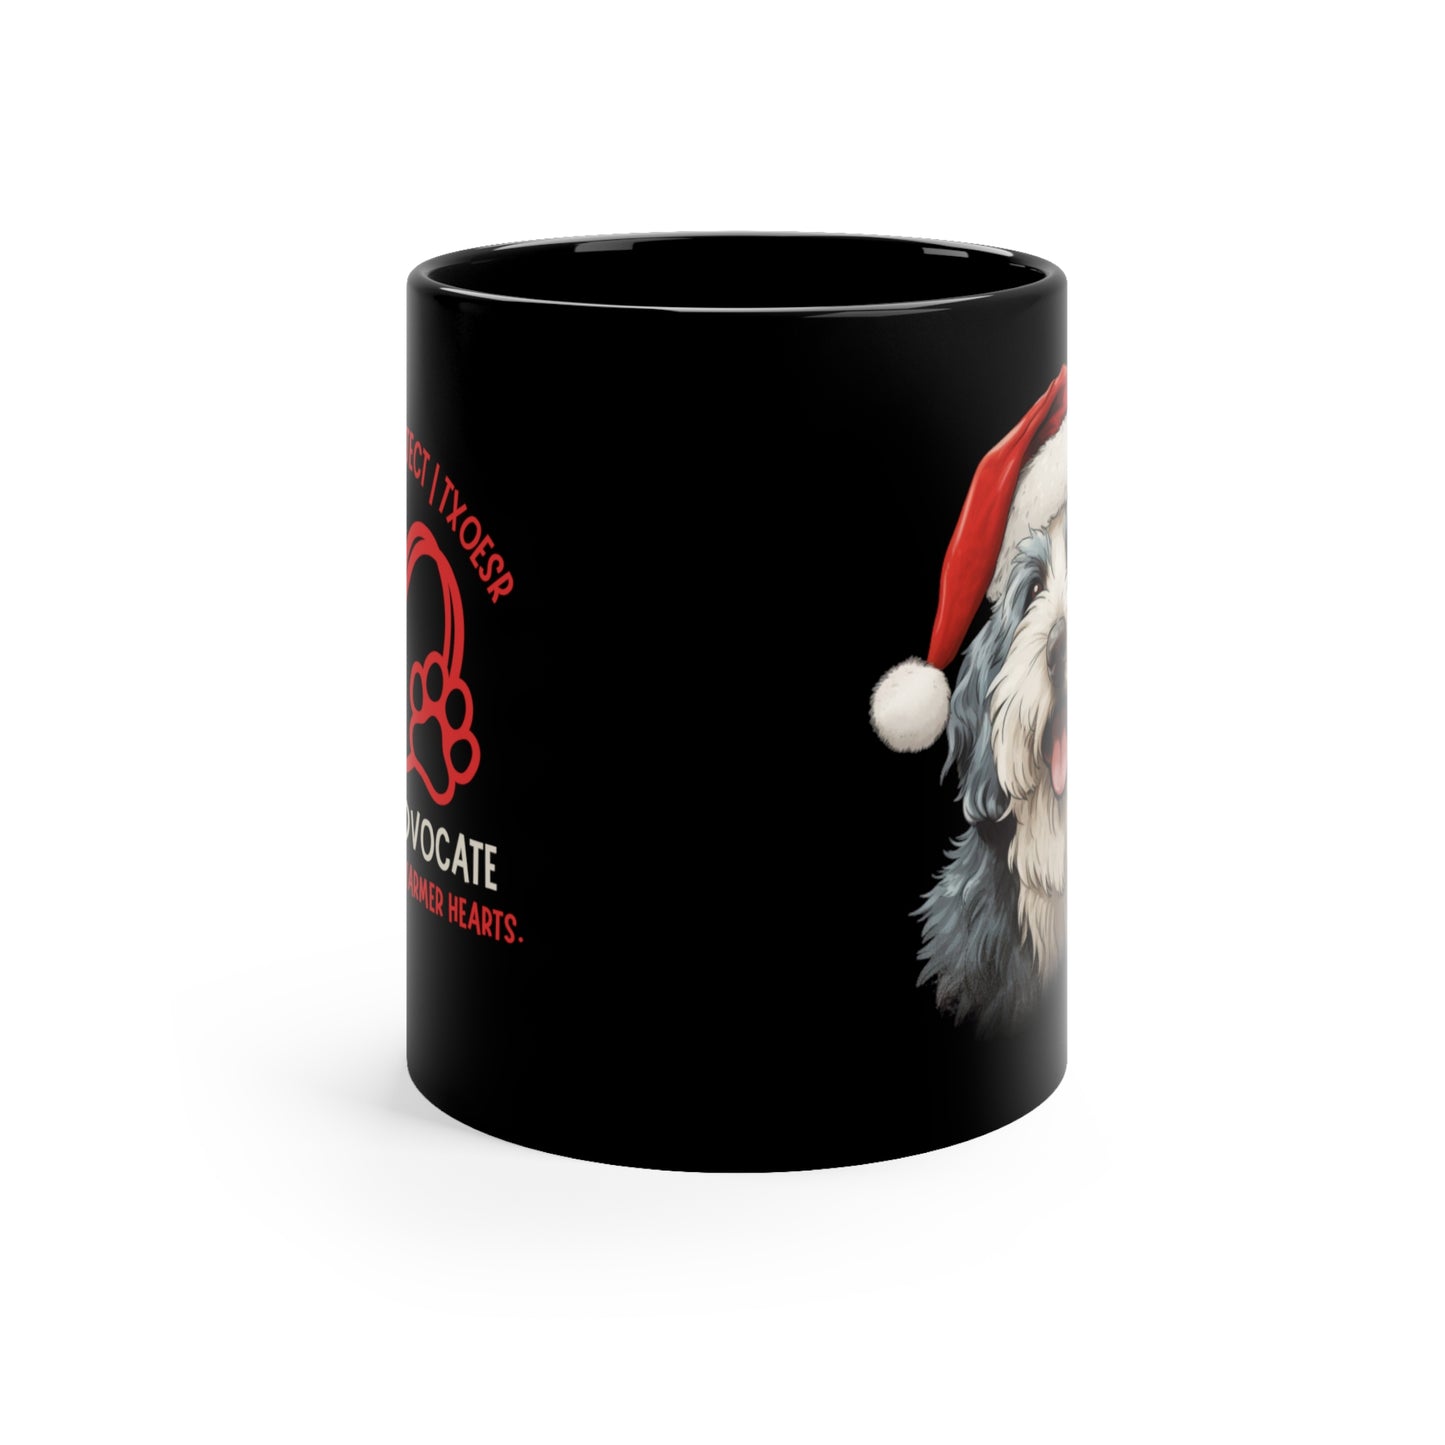 Santa Sheepdog 11oz Black Mug